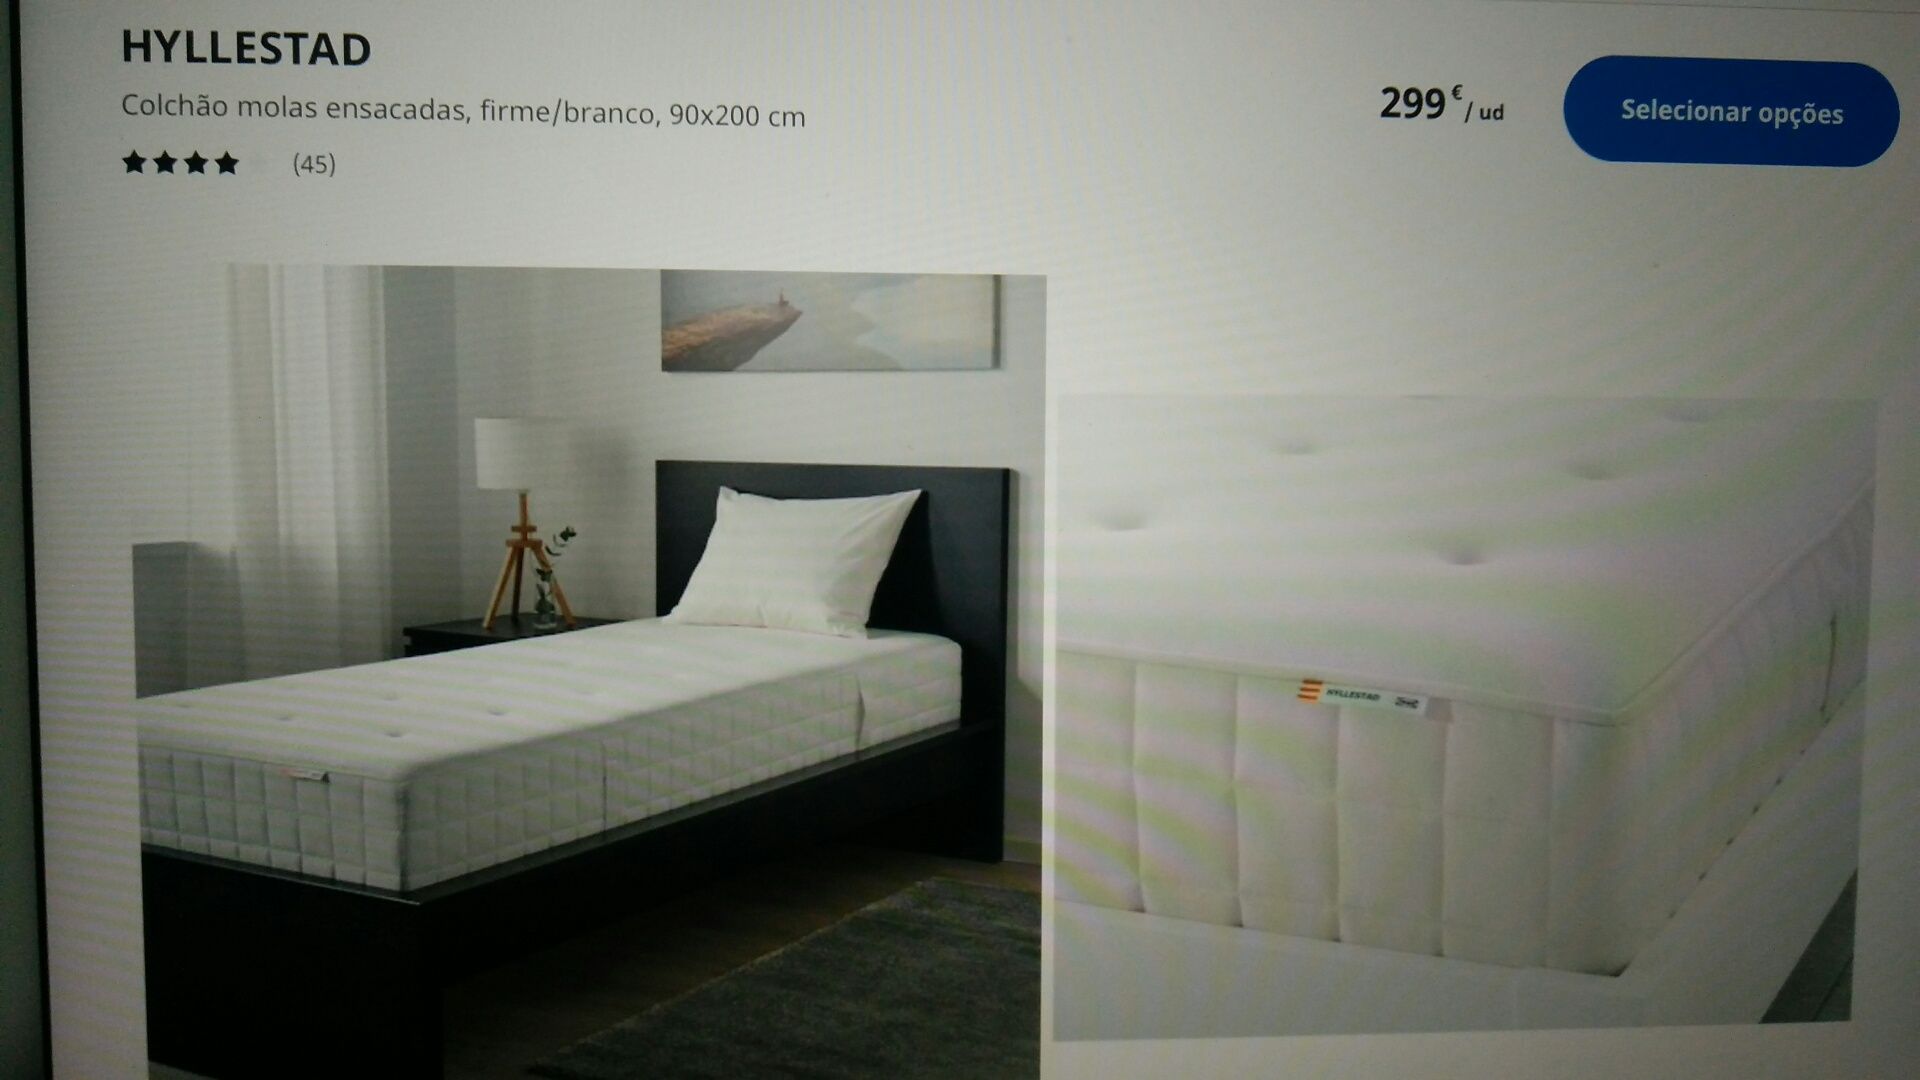 Cama e colchão IKEA